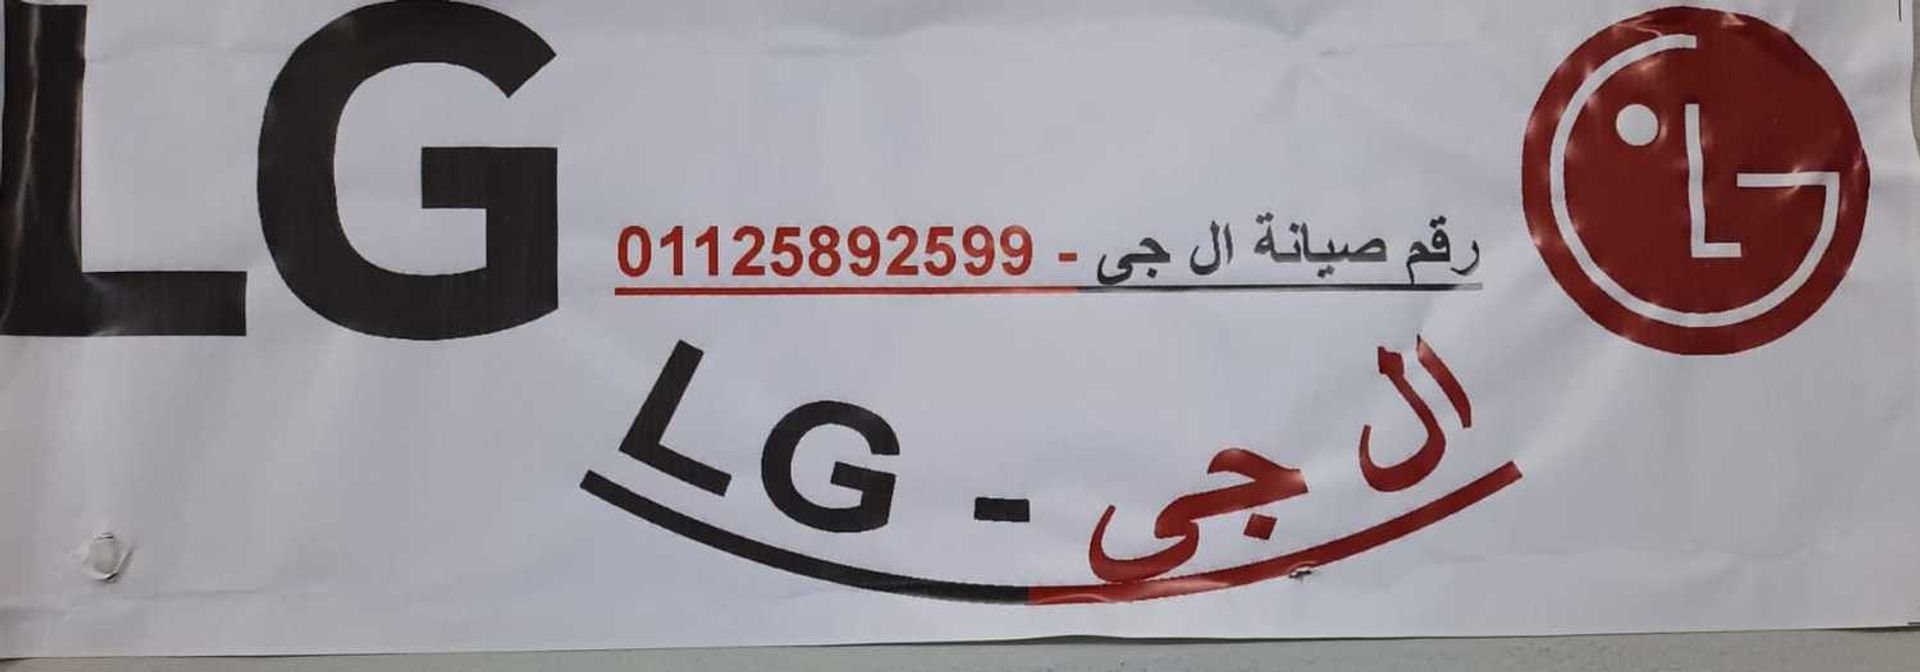 خدمة صيانة LG شبين الكوم 01093055835 